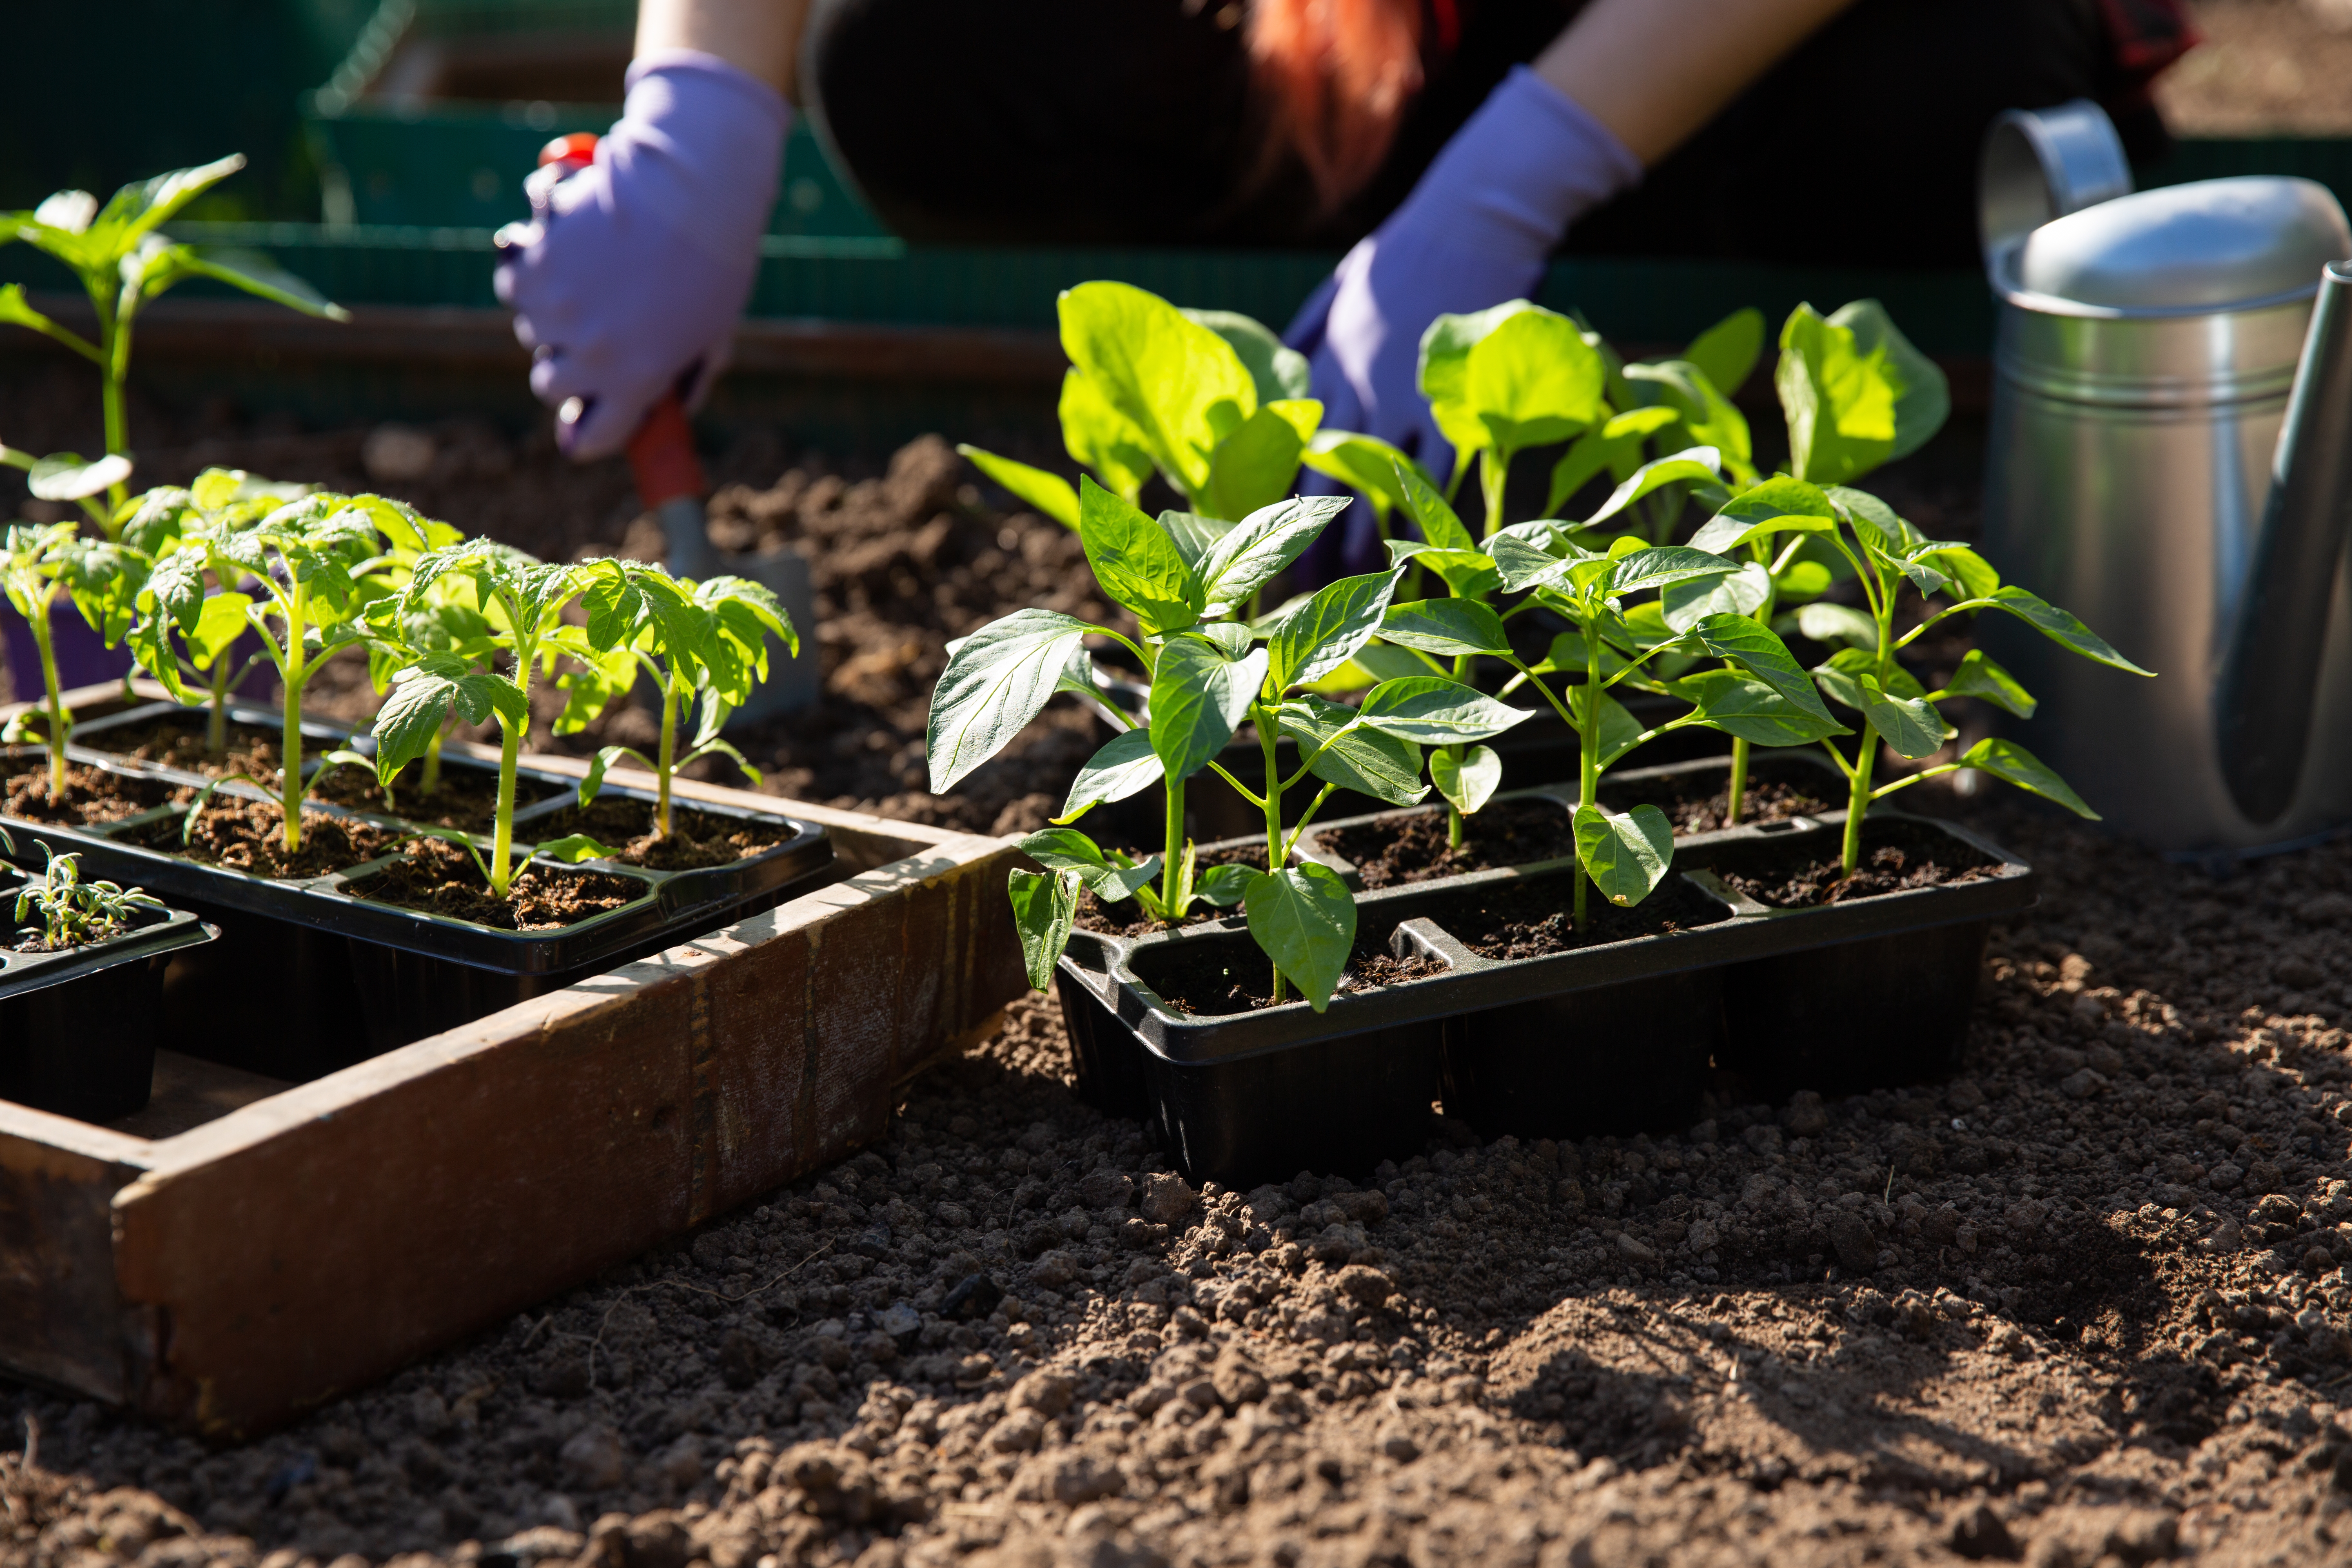 L'aubergine a besoin de soleil et de chaleur pour bien se développer, sans oublier une terre fraîche et humide. Copyright (c) 2022 Geshas/Shutterstock.